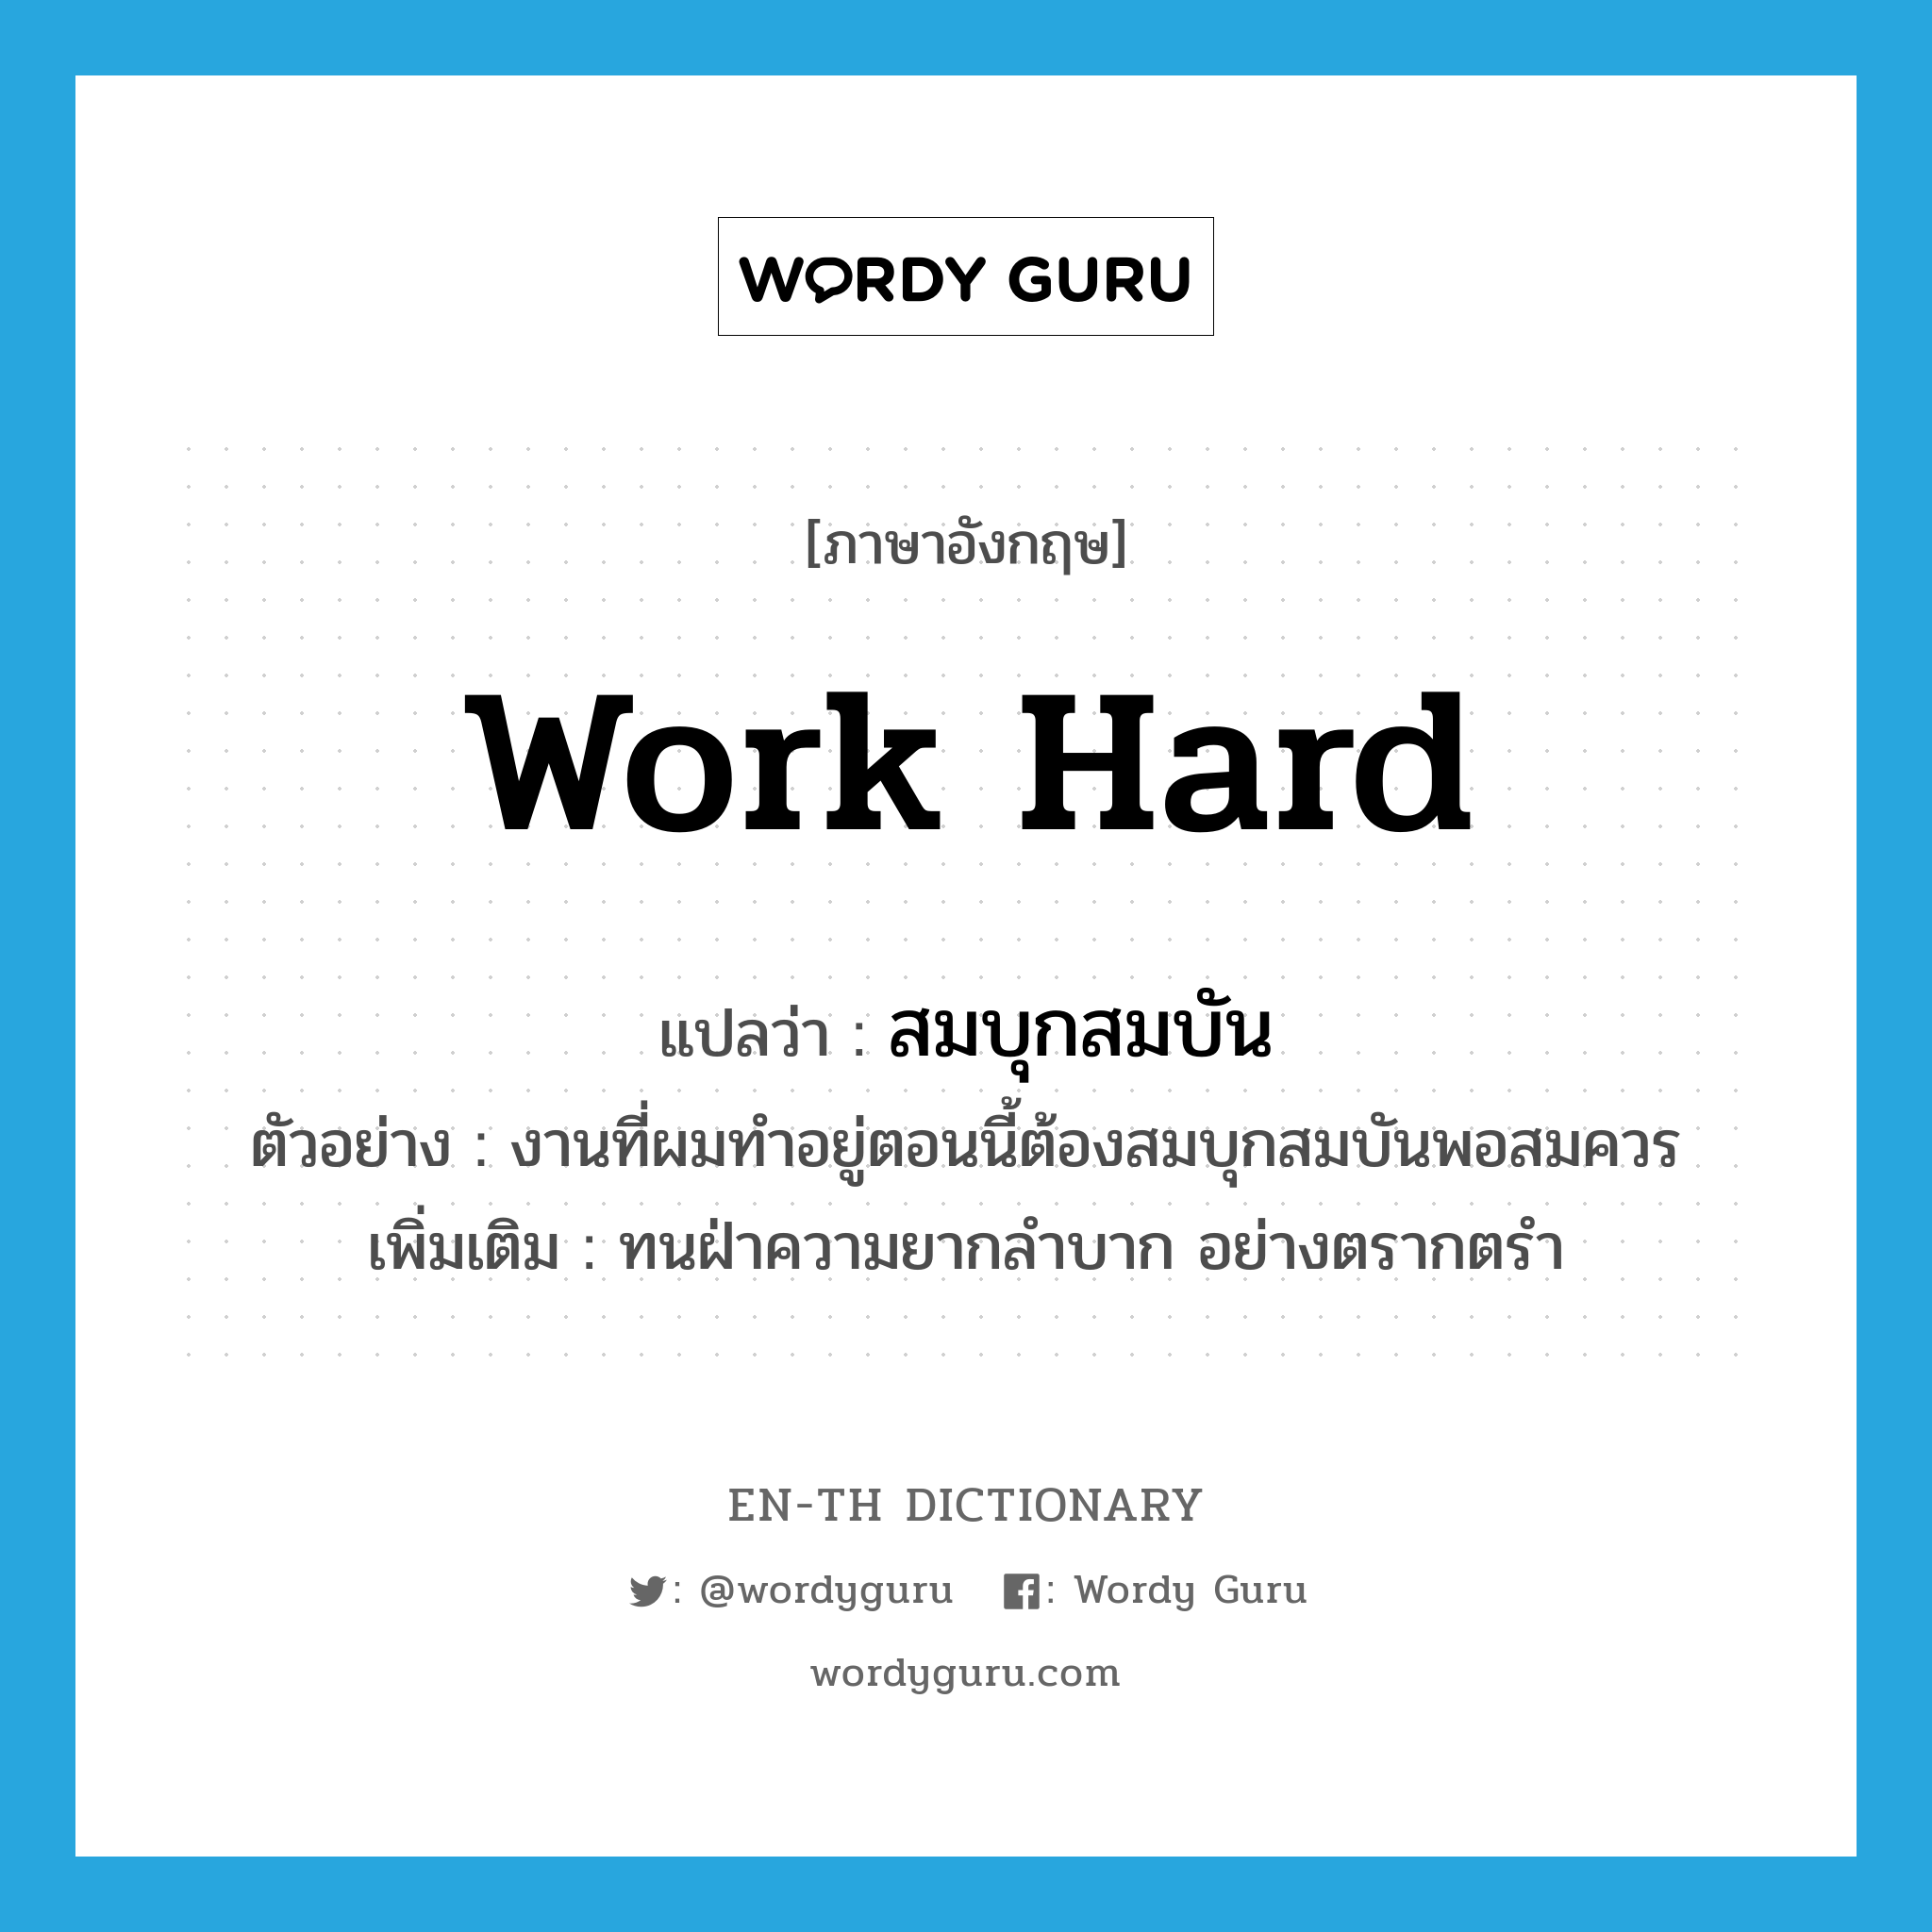 work hard แปลว่า?, คำศัพท์ภาษาอังกฤษ work hard แปลว่า สมบุกสมบัน ประเภท V ตัวอย่าง งานที่ผมทำอยู่ตอนนี้ต้องสมบุกสมบันพอสมควร เพิ่มเติม ทนฝ่าความยากลำบาก อย่างตรากตรำ หมวด V